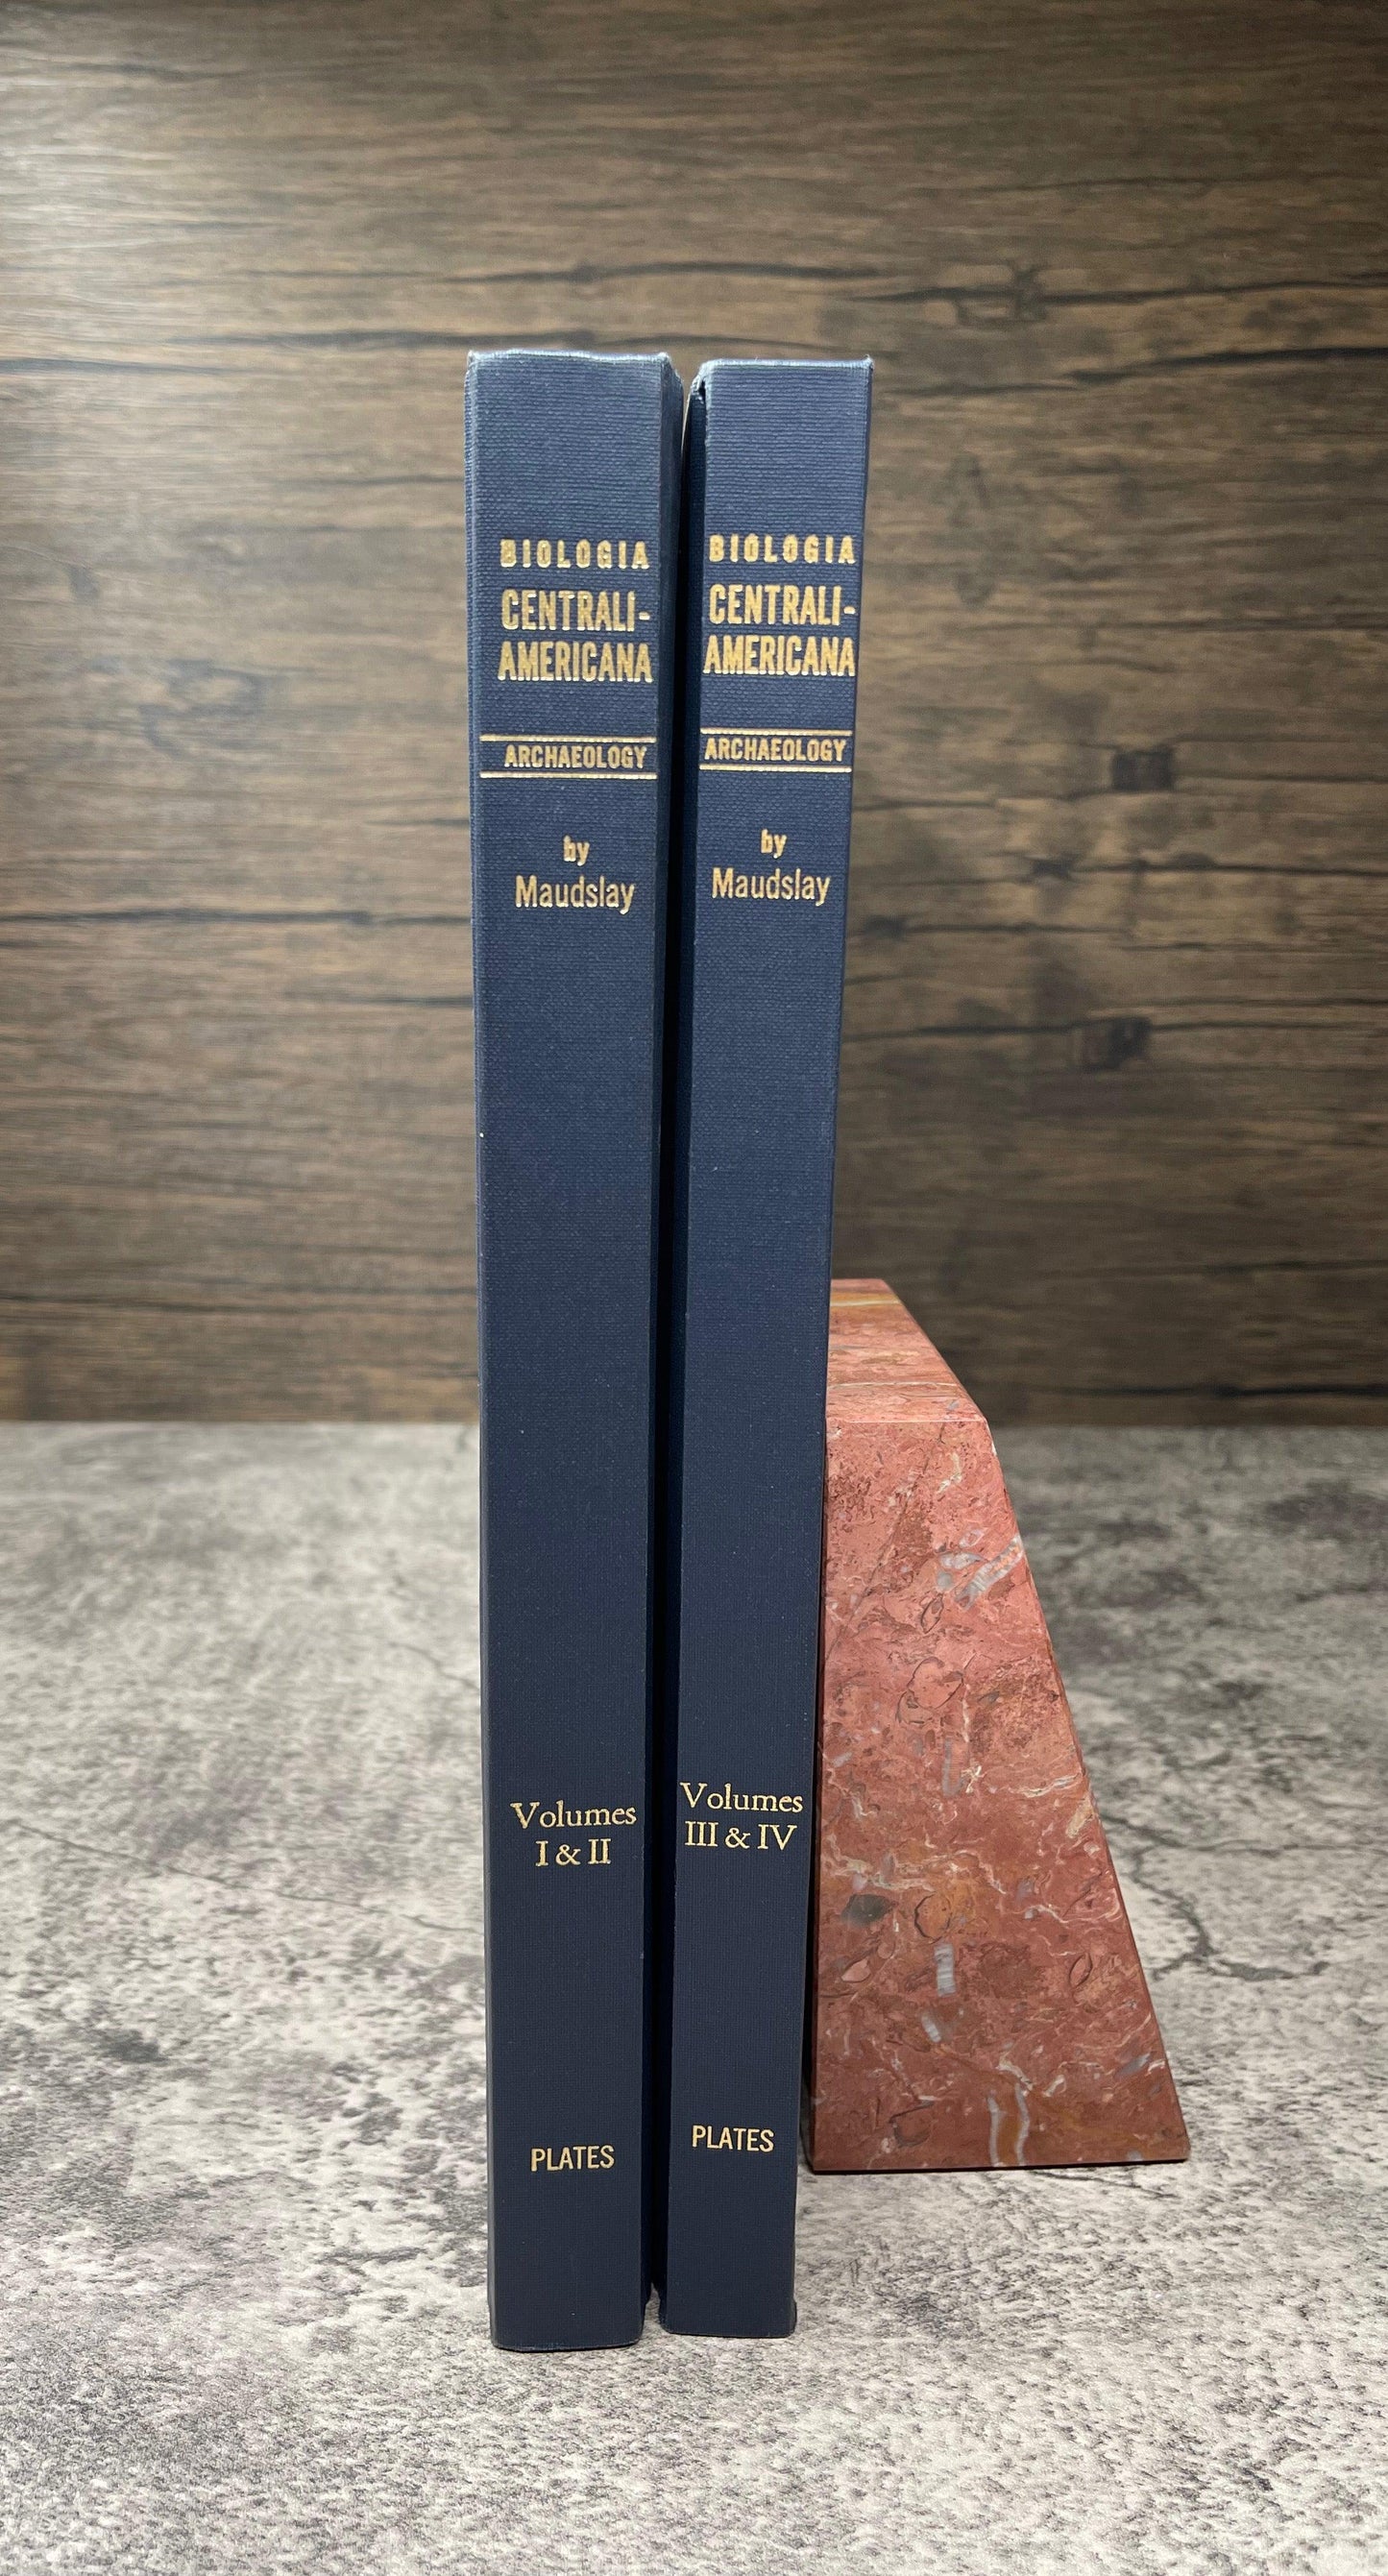 Biologia Centrali-Americana / 4 Volume Facsimile Edition of Plates / 1974 - Precious Cache